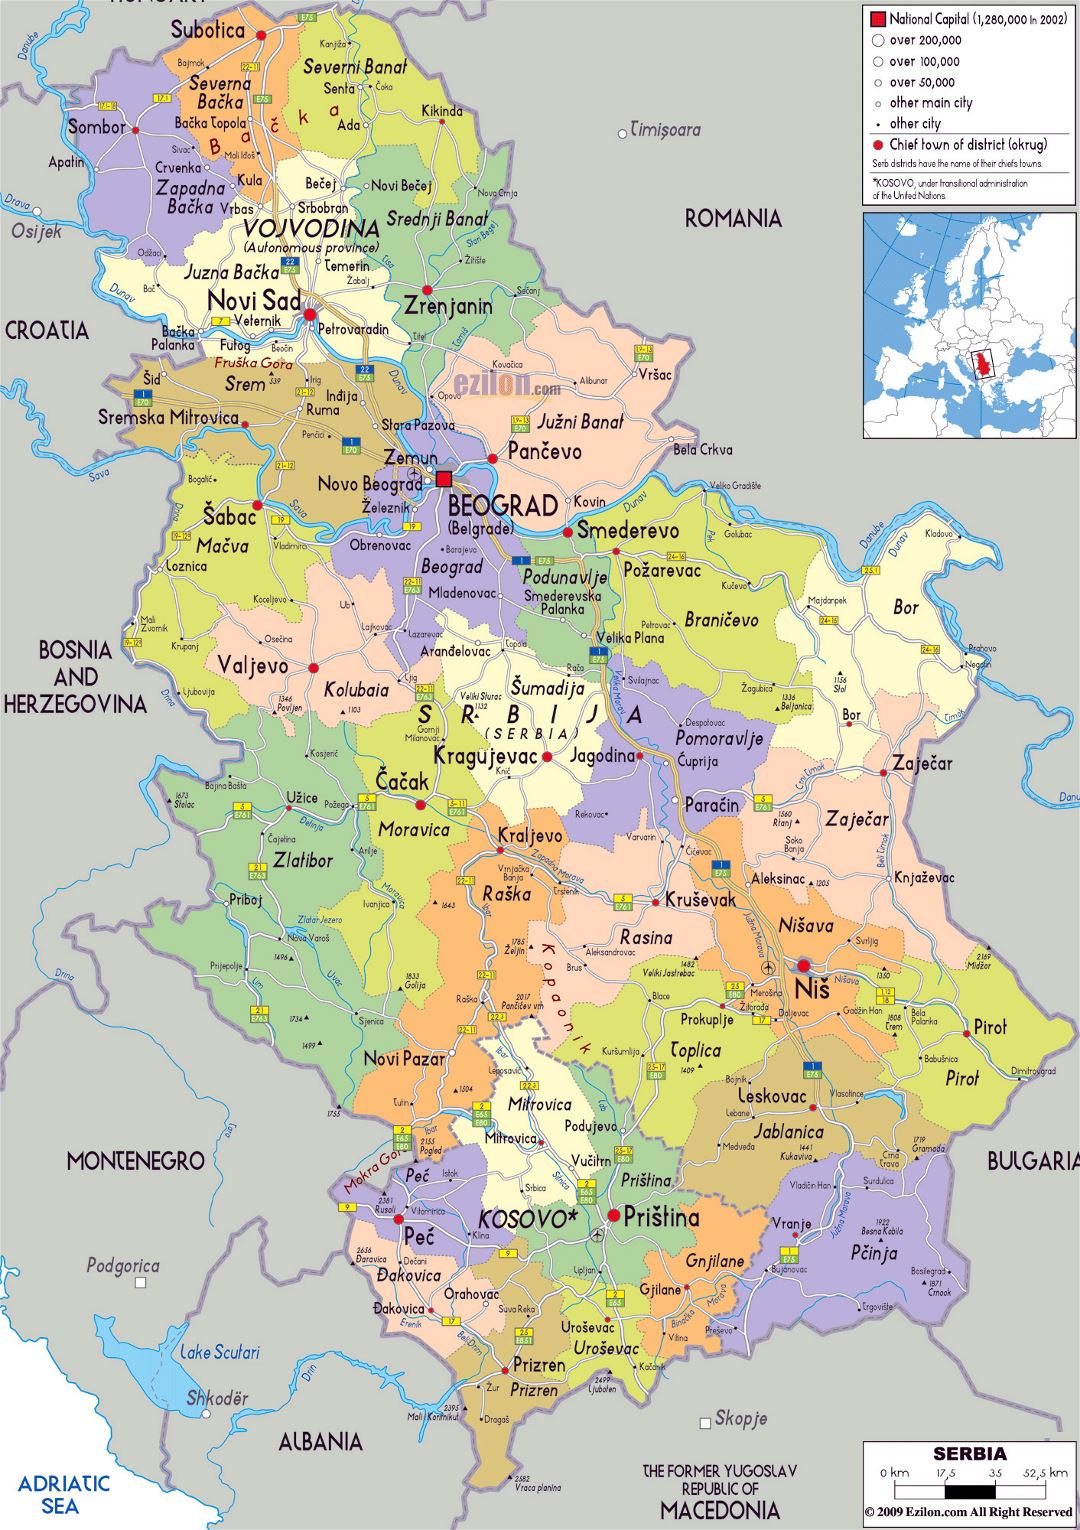 Grande mapa político y administrativo de Serbia con carreteras, ciudades y aeropuertos